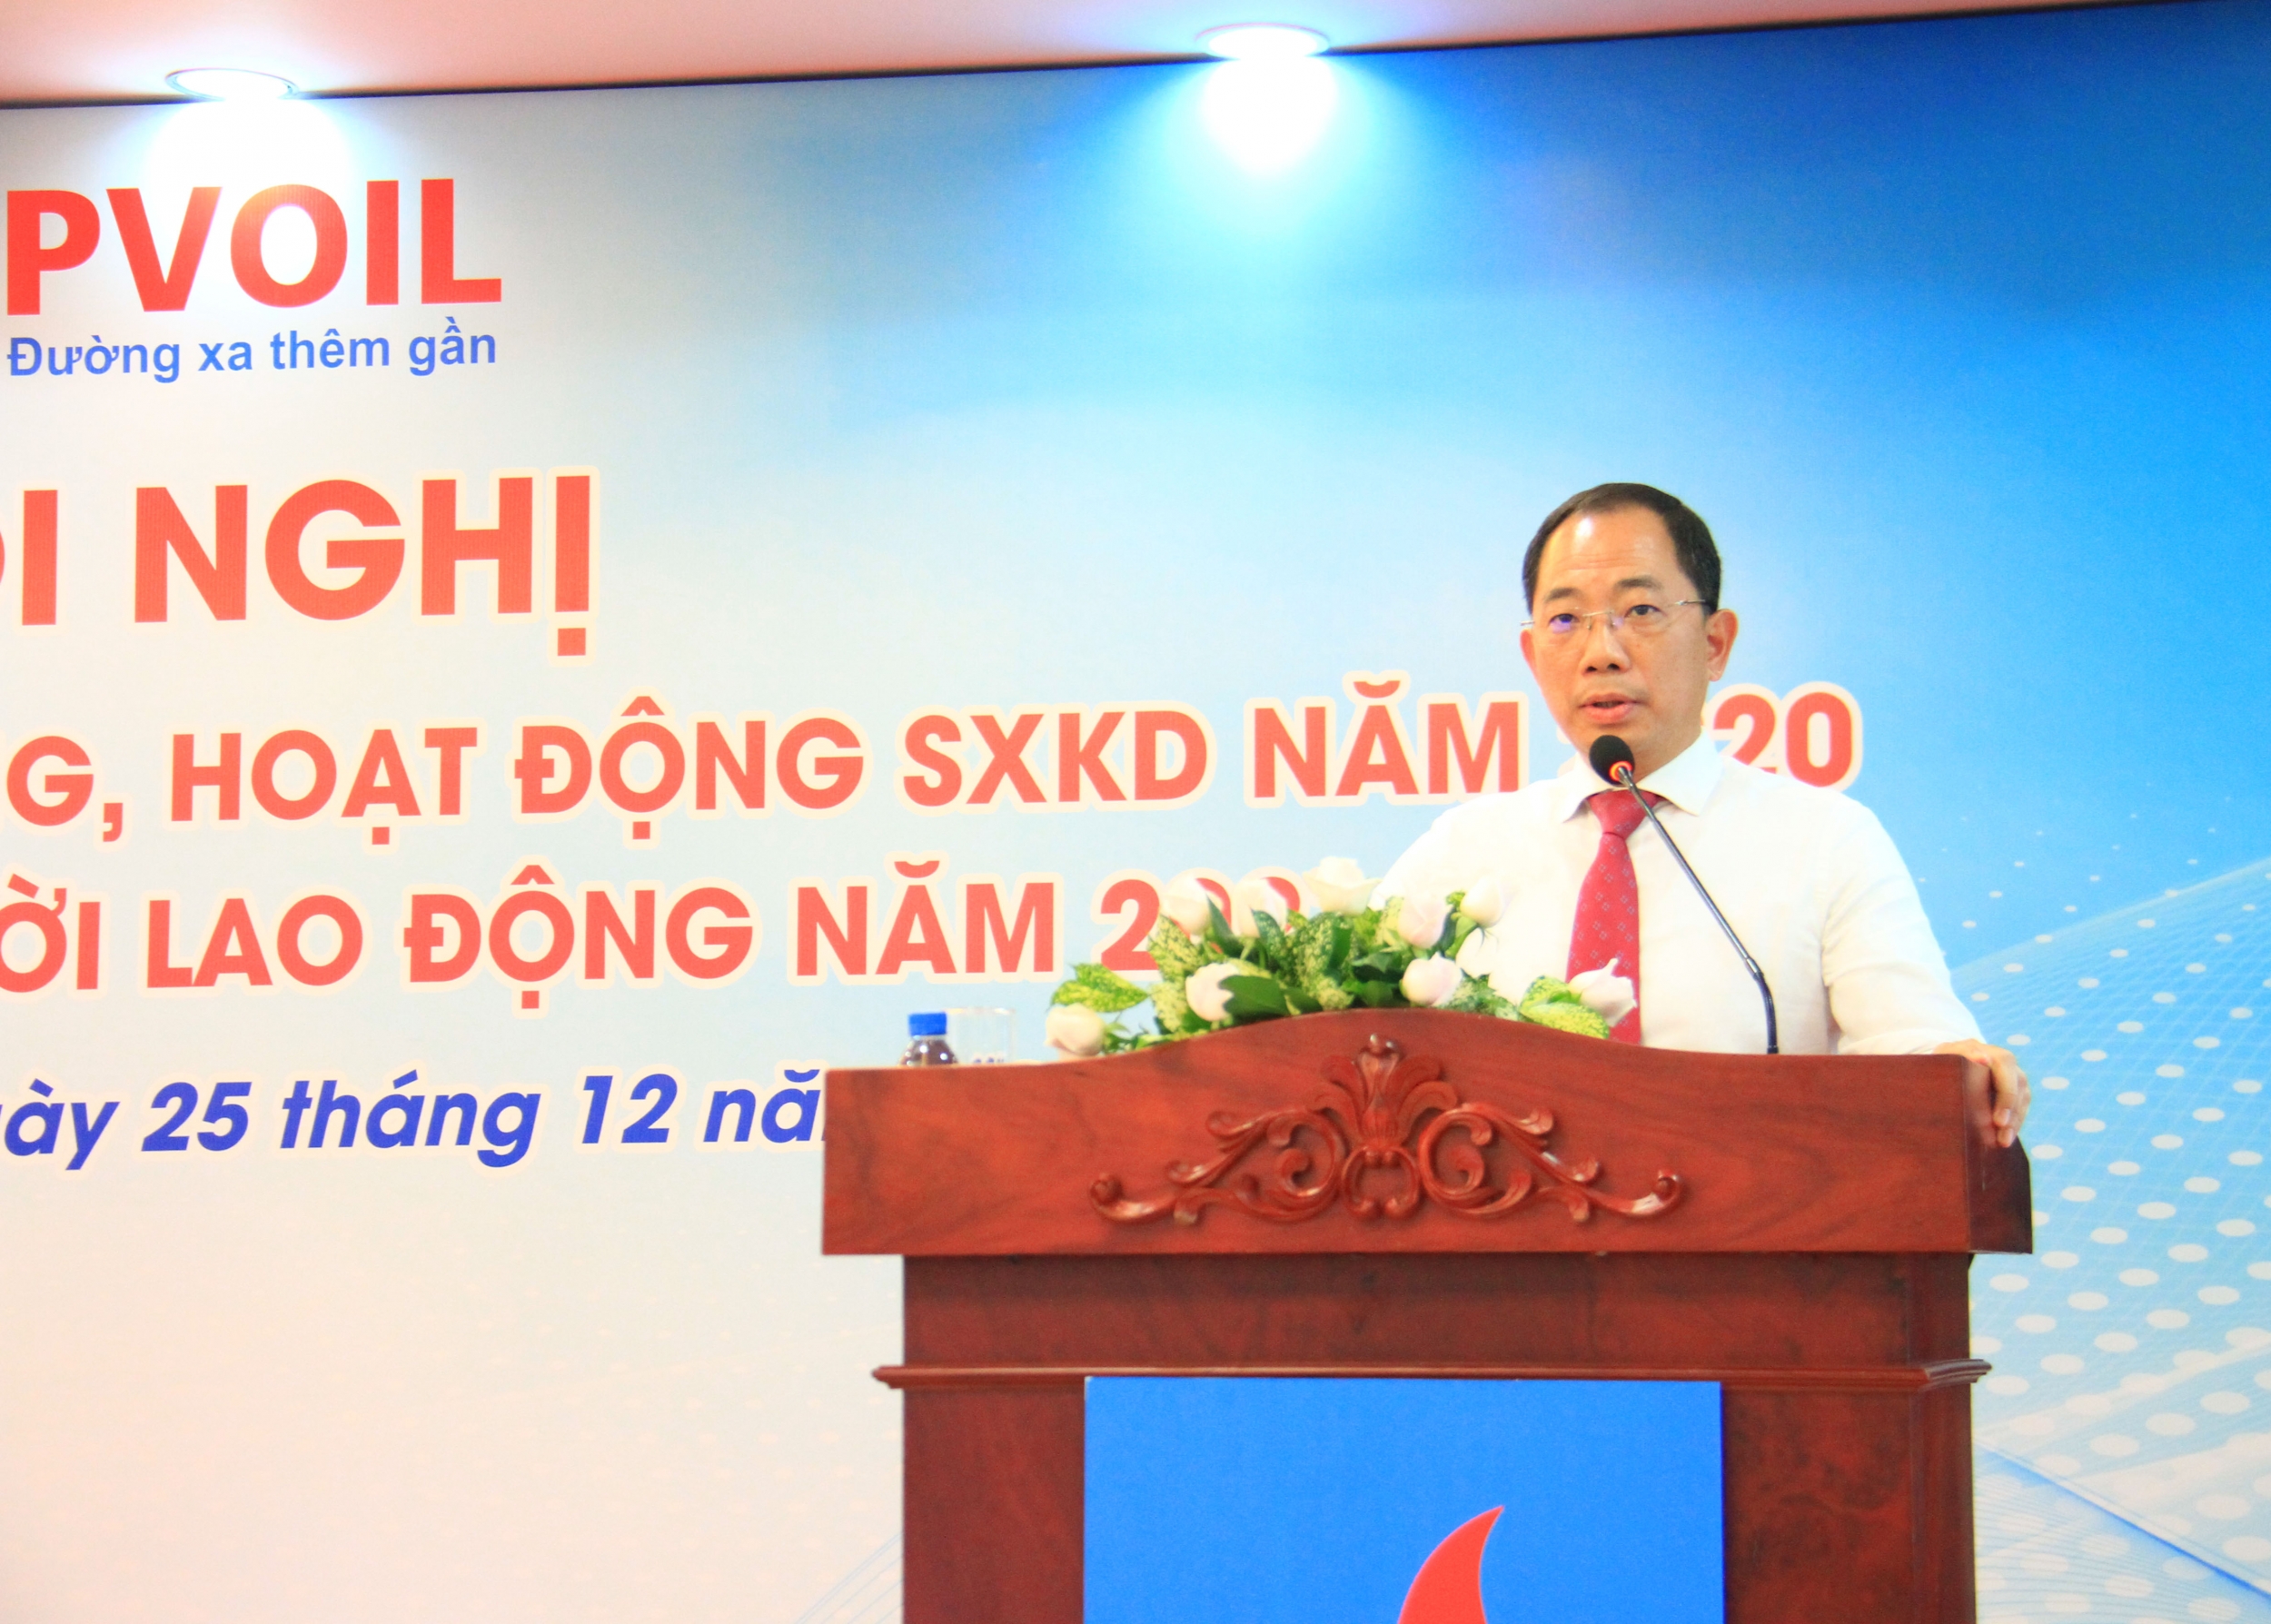 Ông Cao Hoài Dương – Bí thư Đảng ủy, Chủ tịch HĐQT PVOIL phát biểu tại Hội nghị